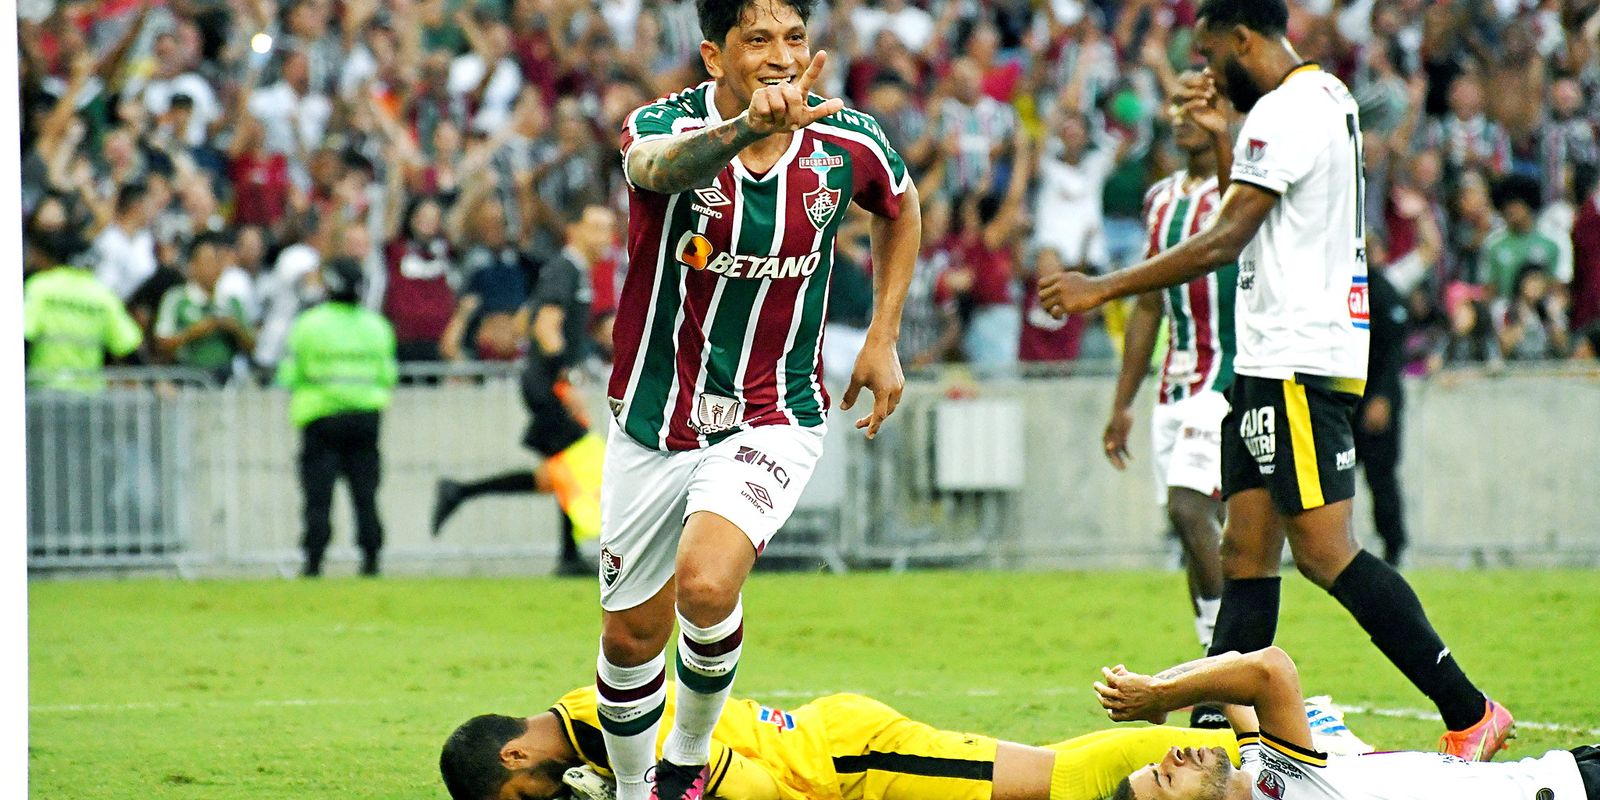 Volta Redonda goleia e vence a primeira no Campeonato Carioca - Futebol -  R7 Campeonato Carioca